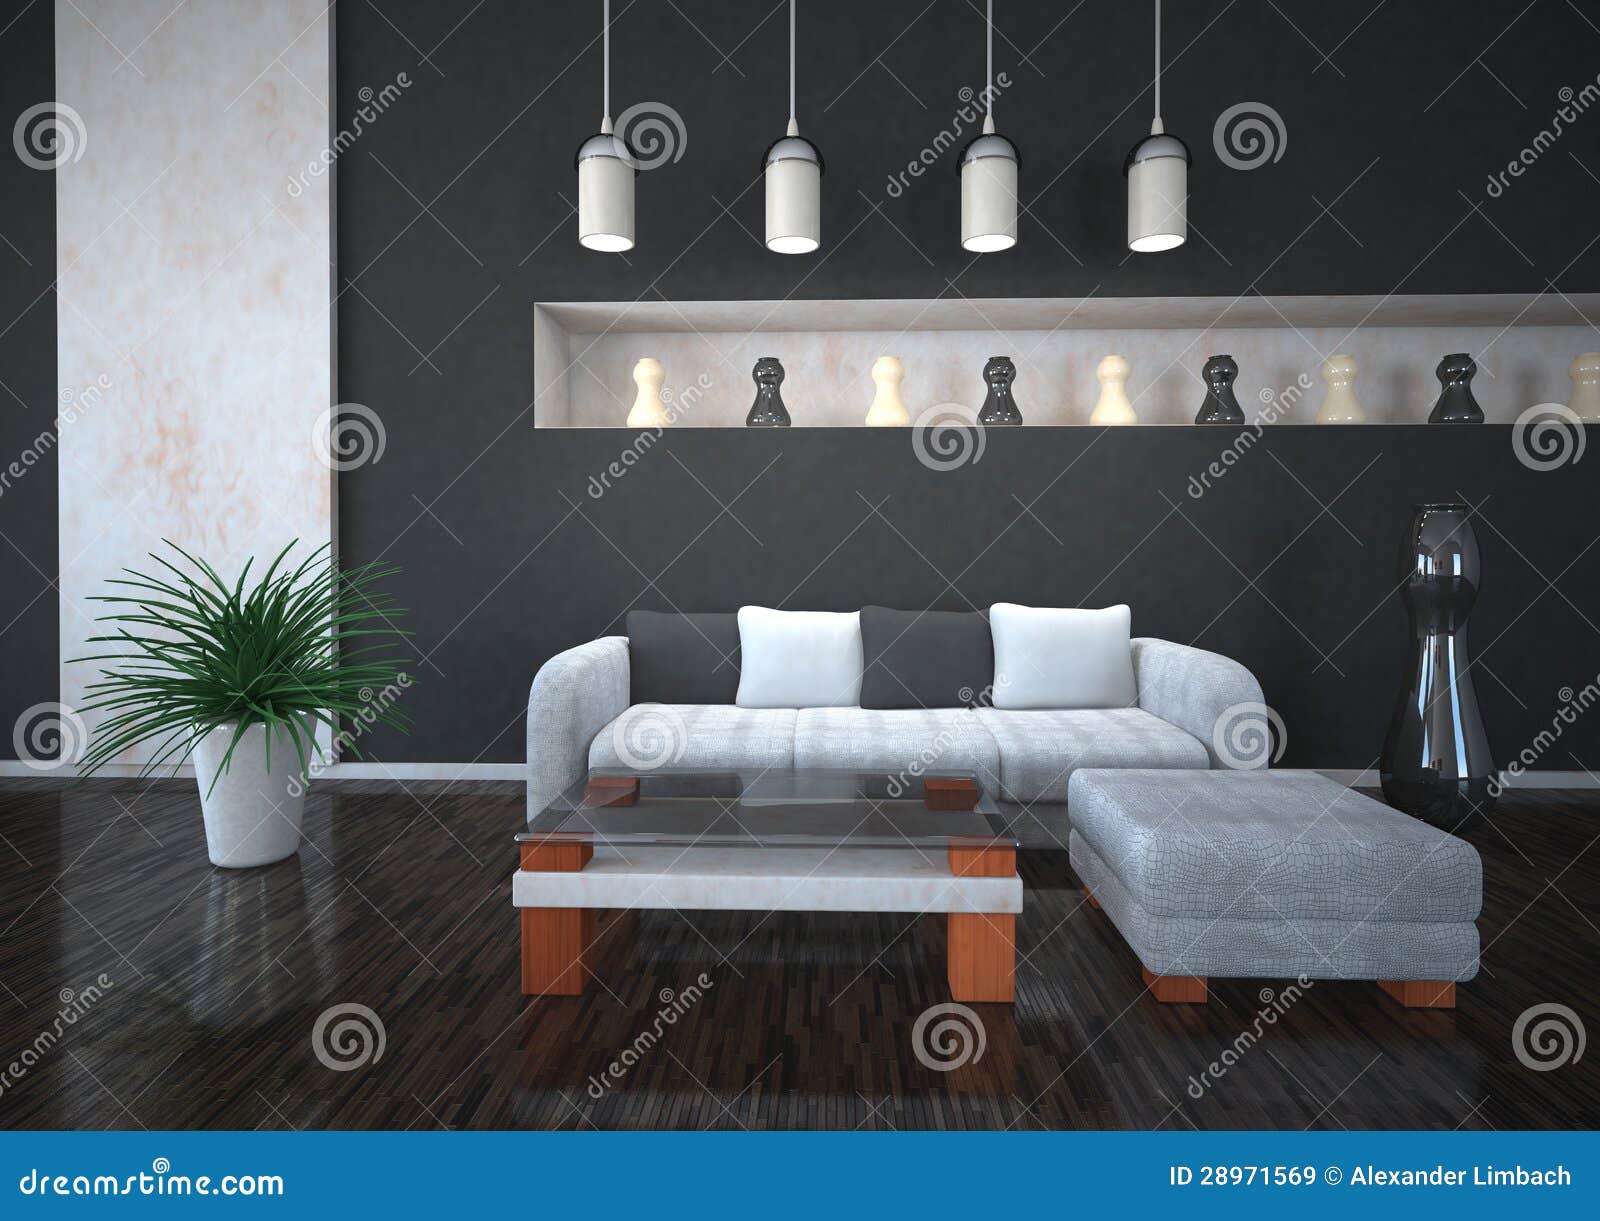 Design de interiores em cores preto e branco com sofÃ¡ e planta.